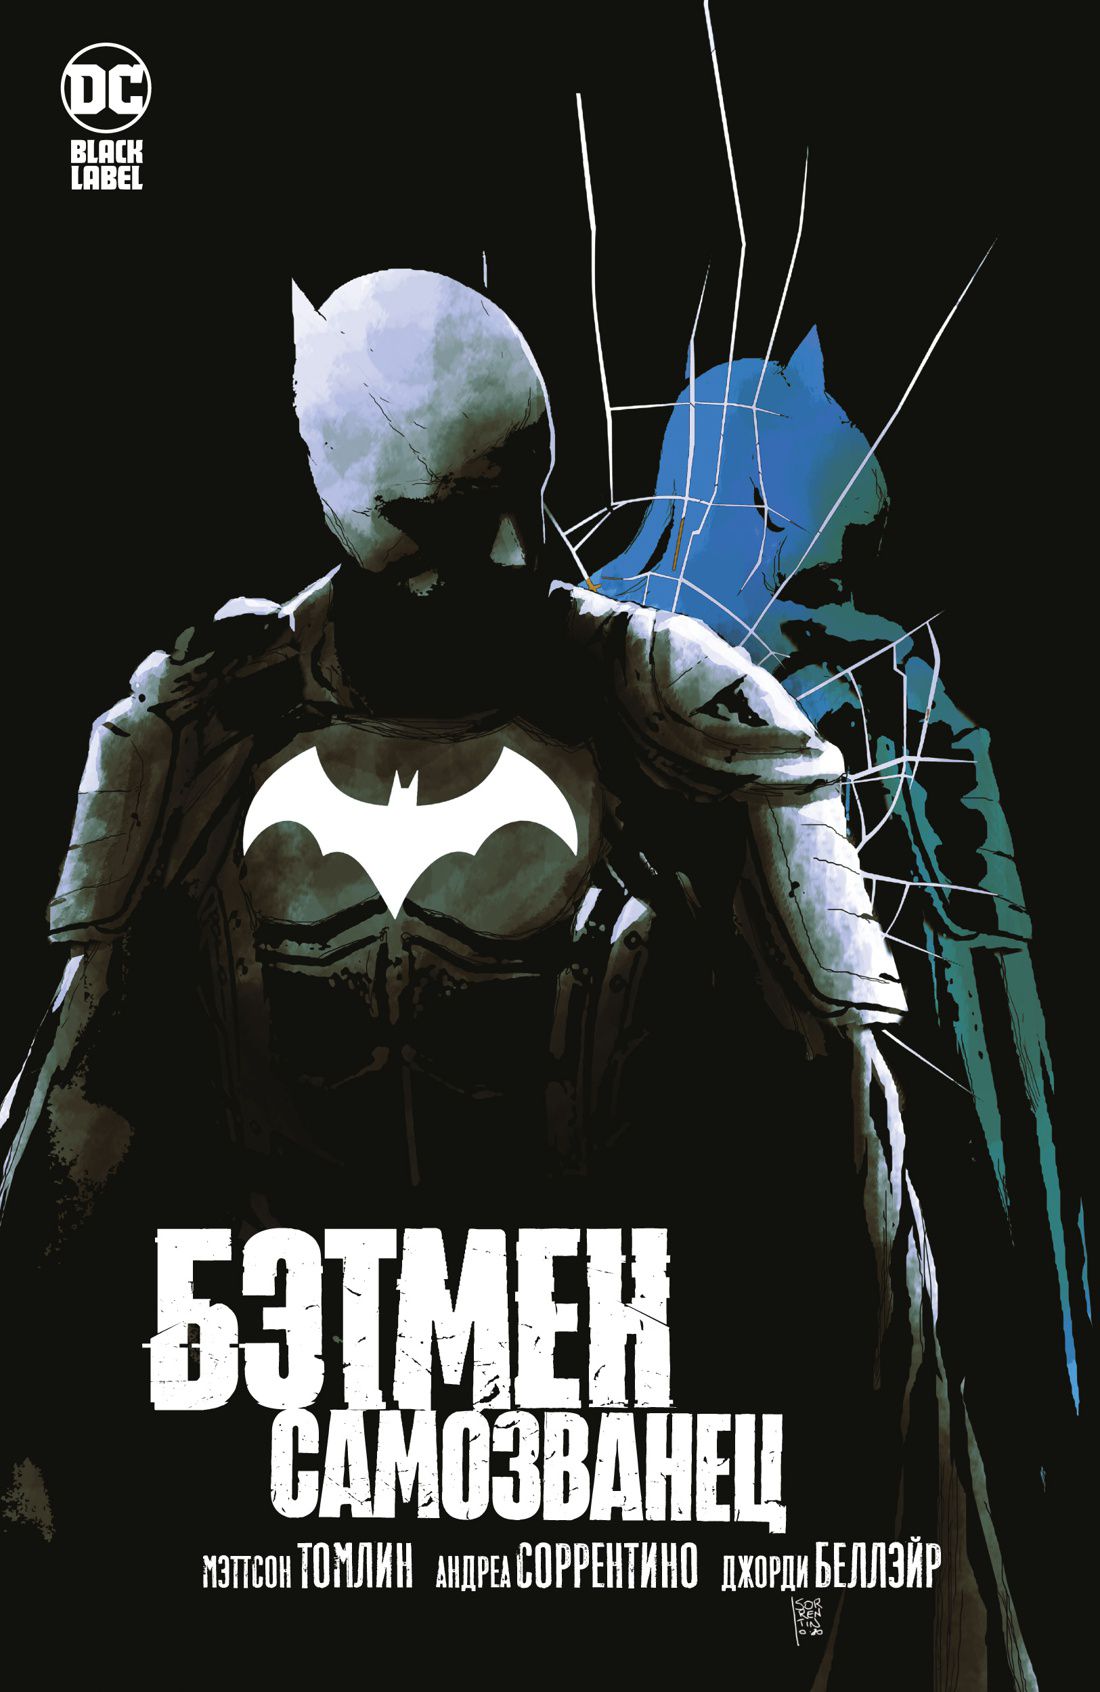 Комикс Бэтмен: Самозванец от 1С Интерес